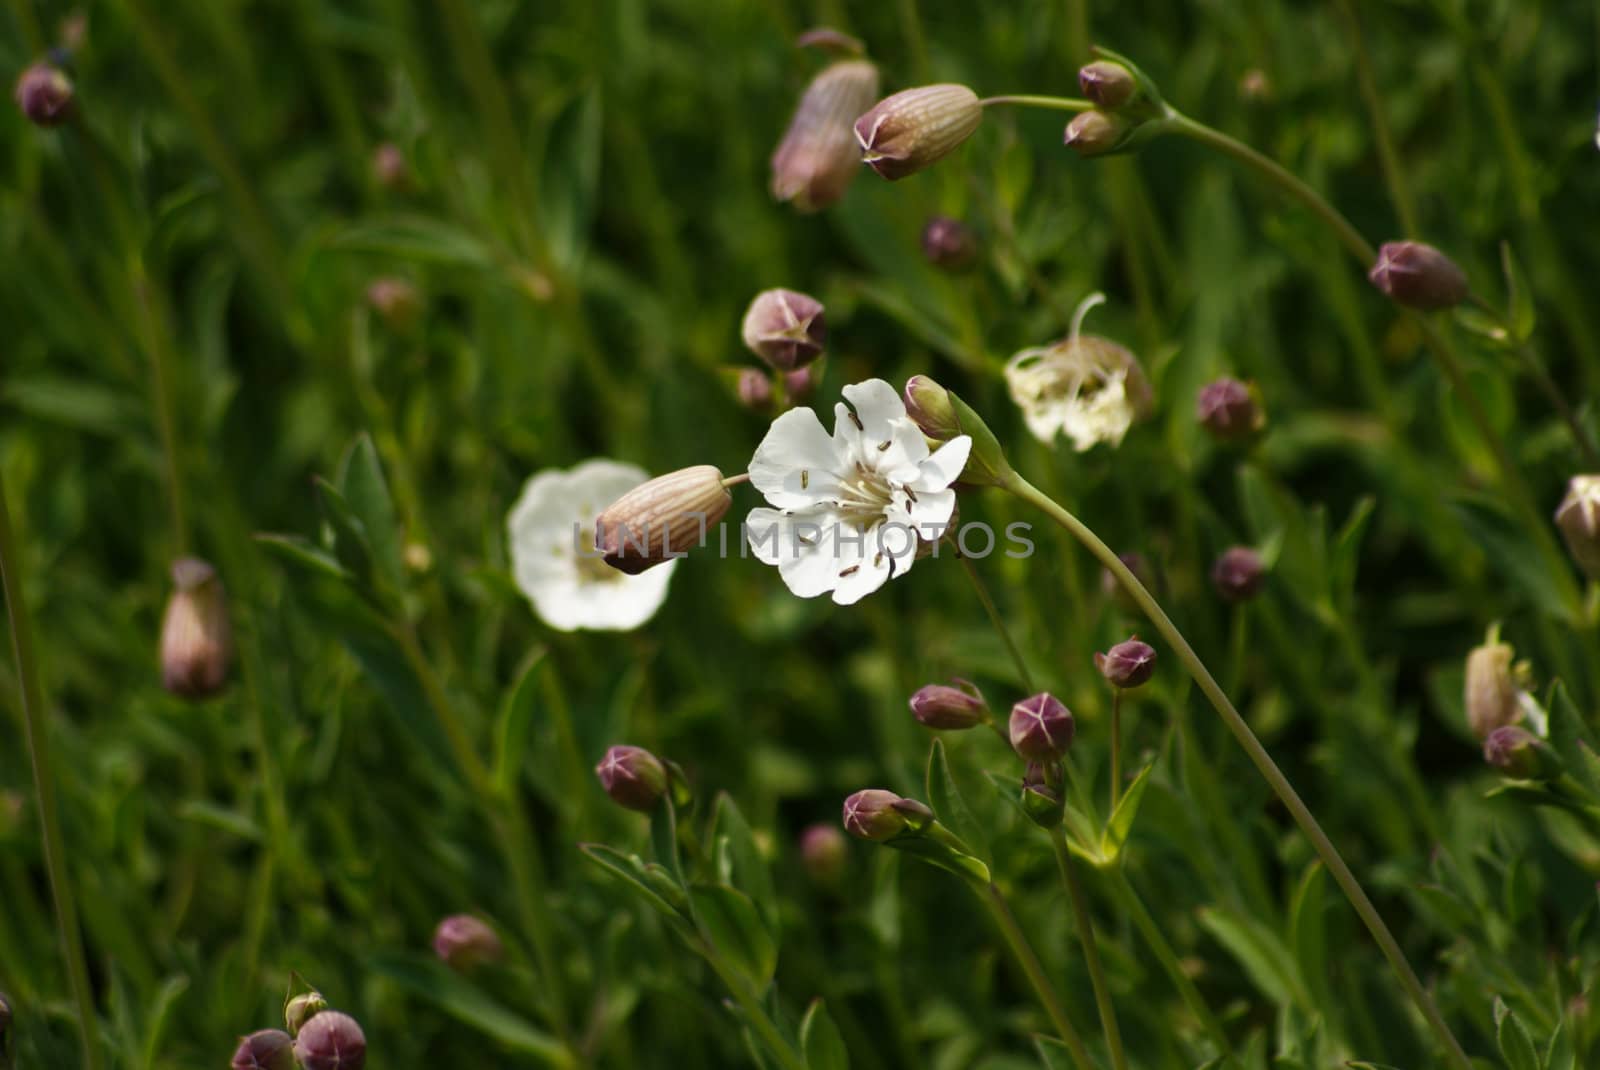 Flowers on meadow by merc67